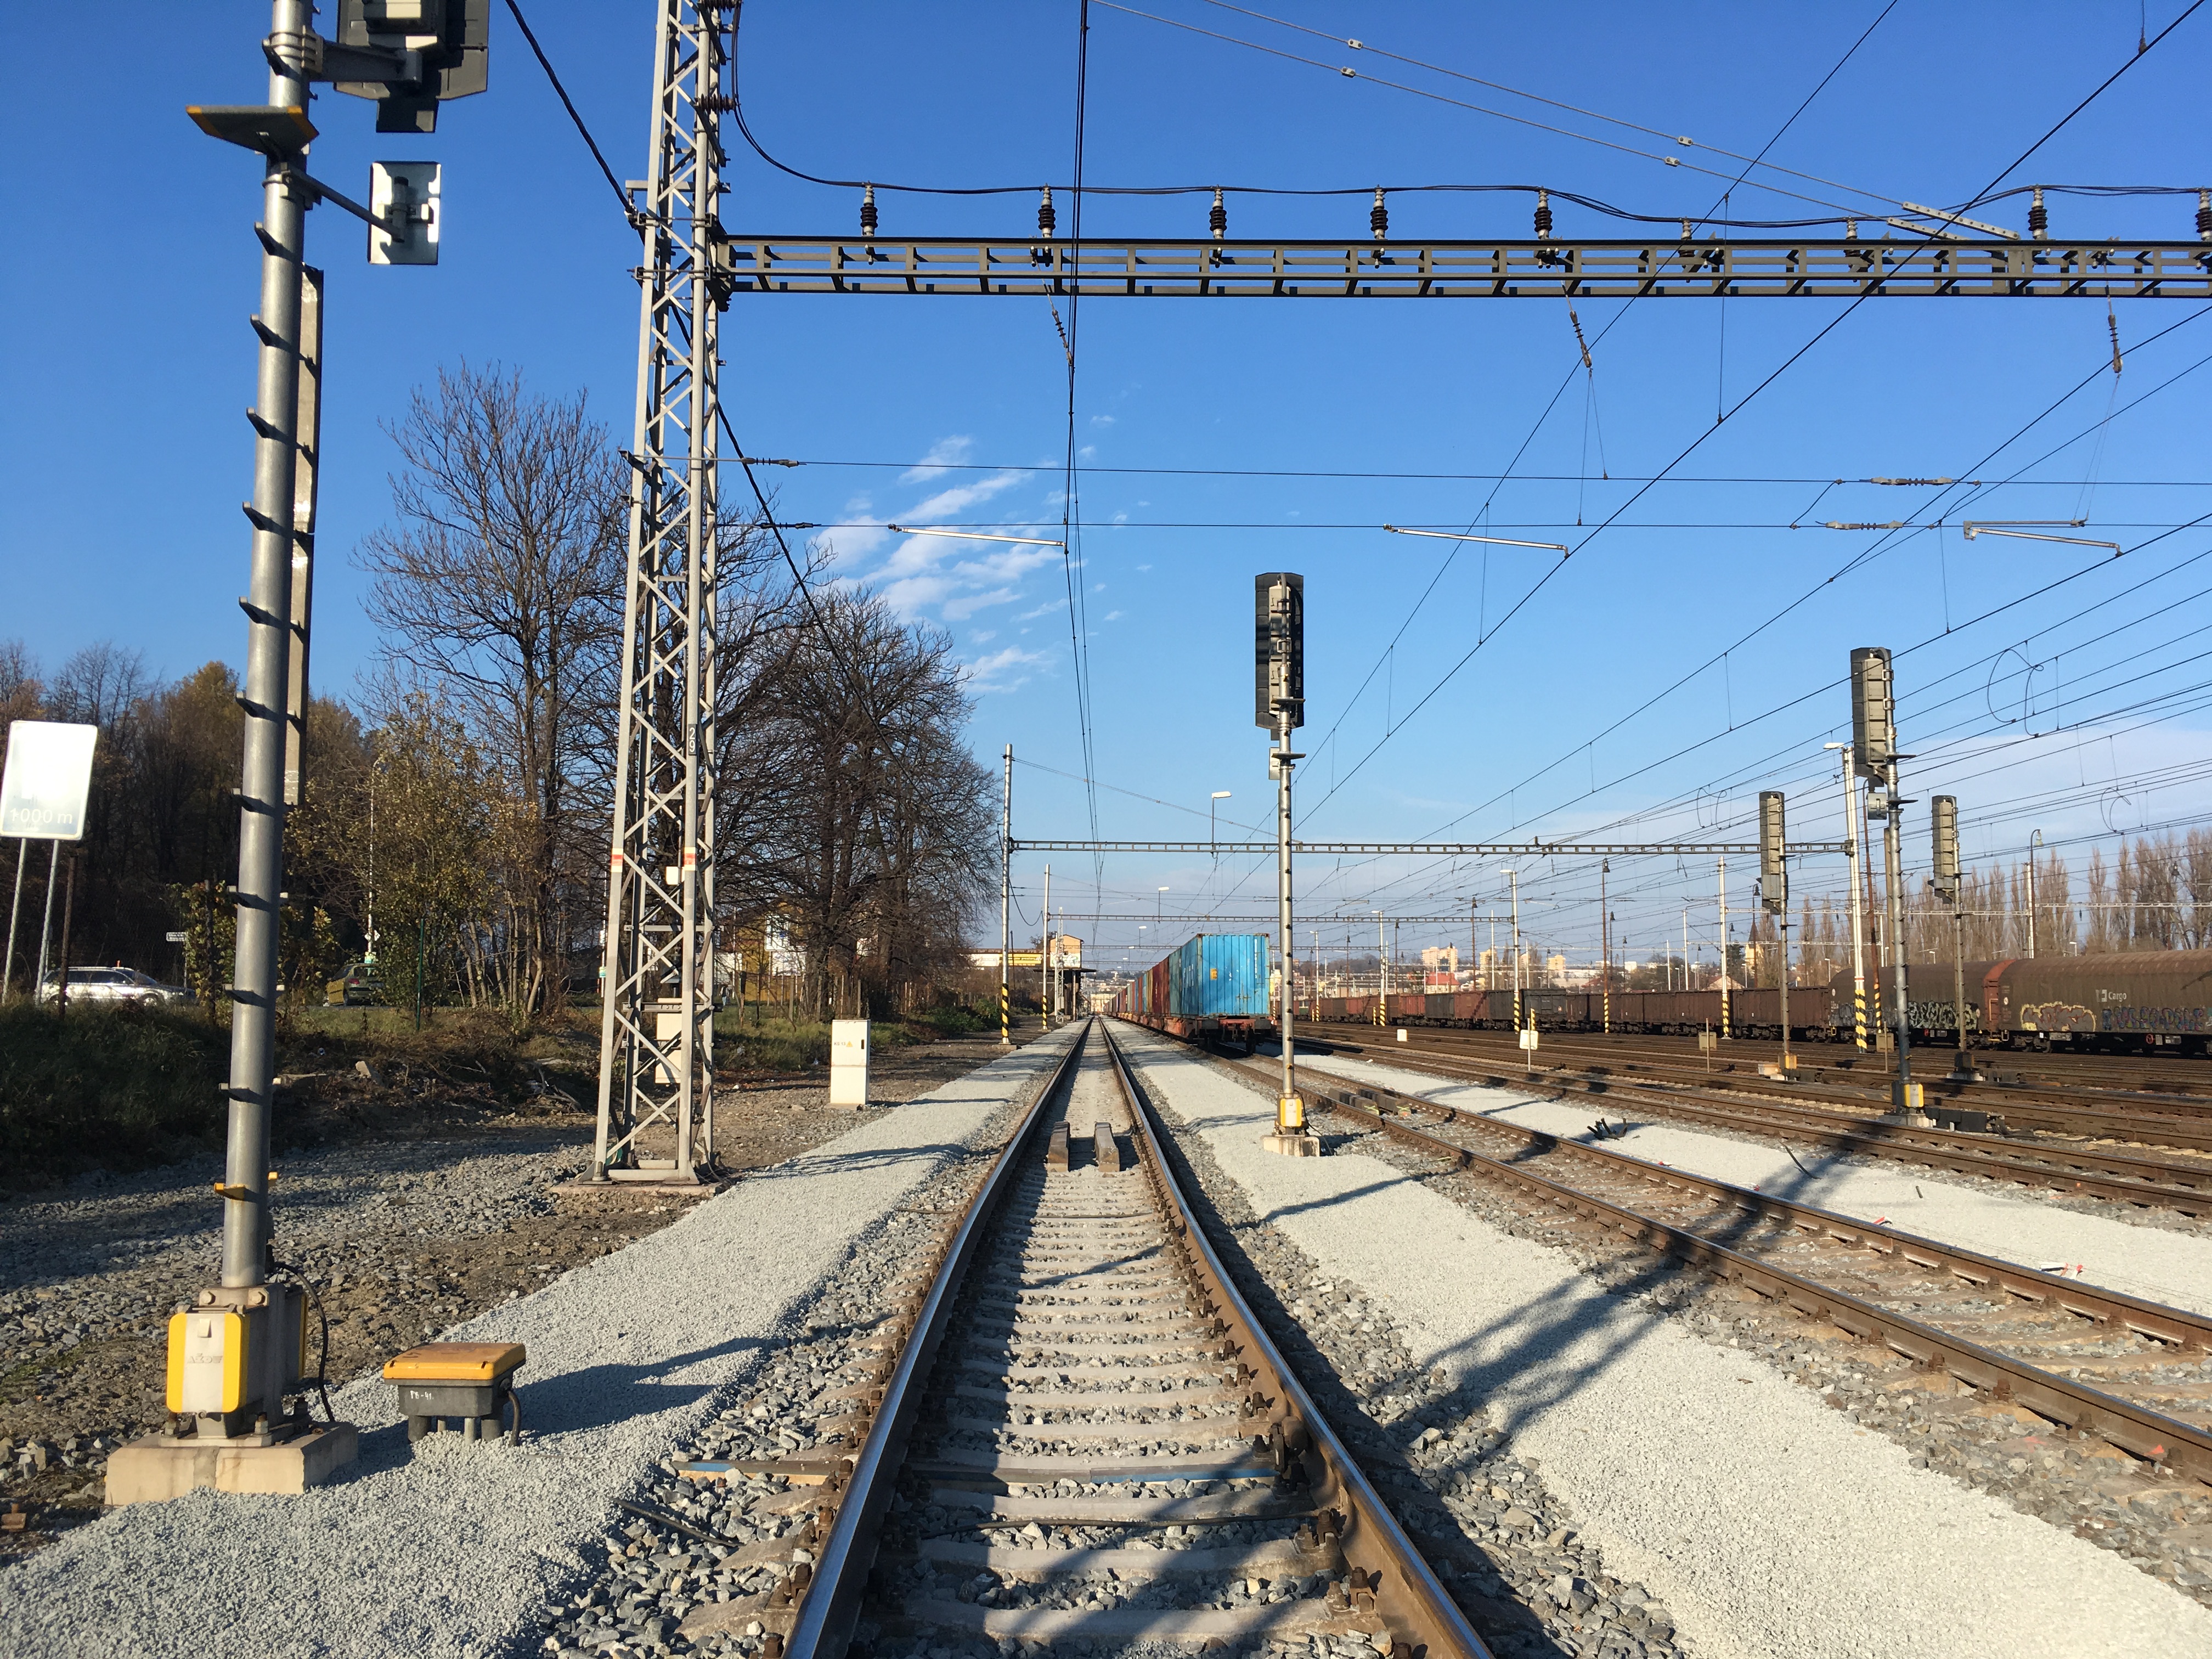 Oprava kolejí v žel. stanici Český Těšín  - Izgradnja željezničke infrastrukture